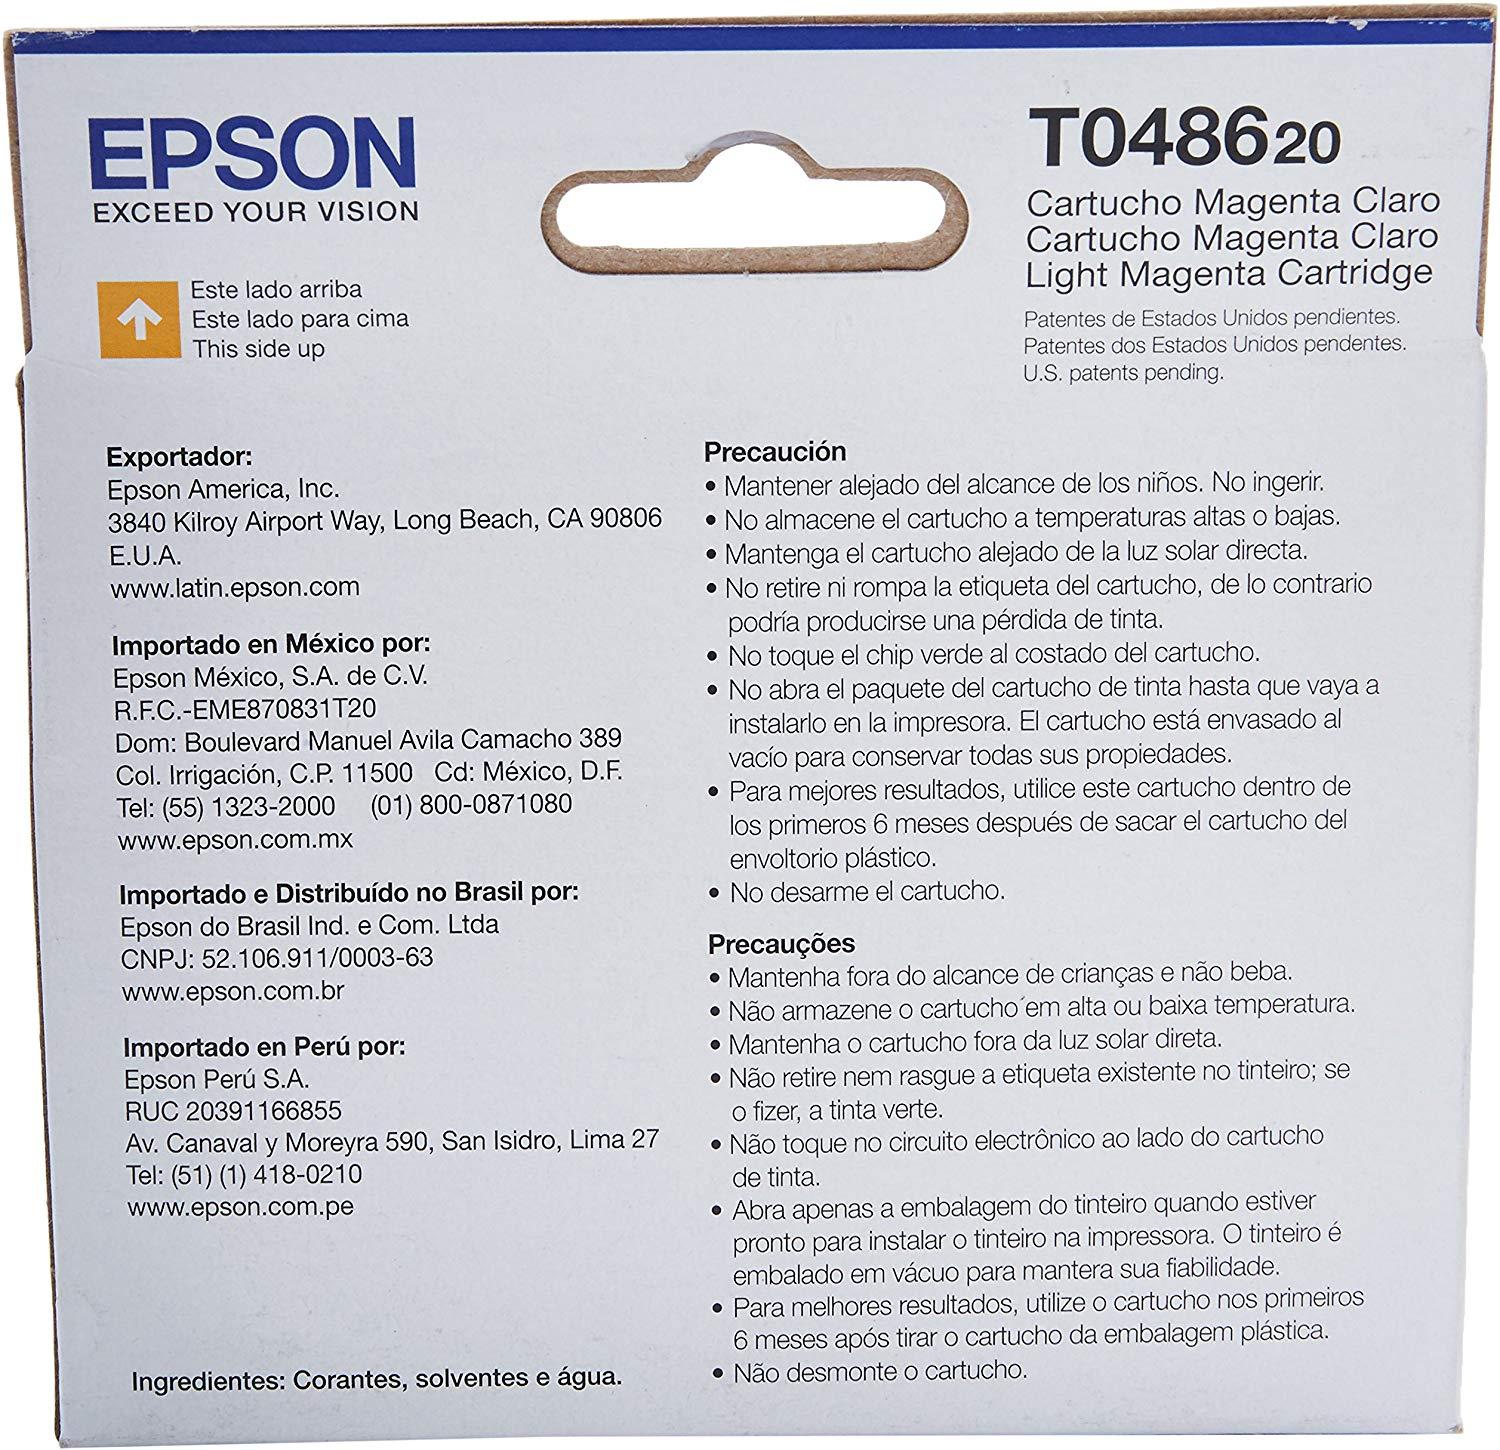 Epson T048620 48 Light Magenta Inkjet Cartridge